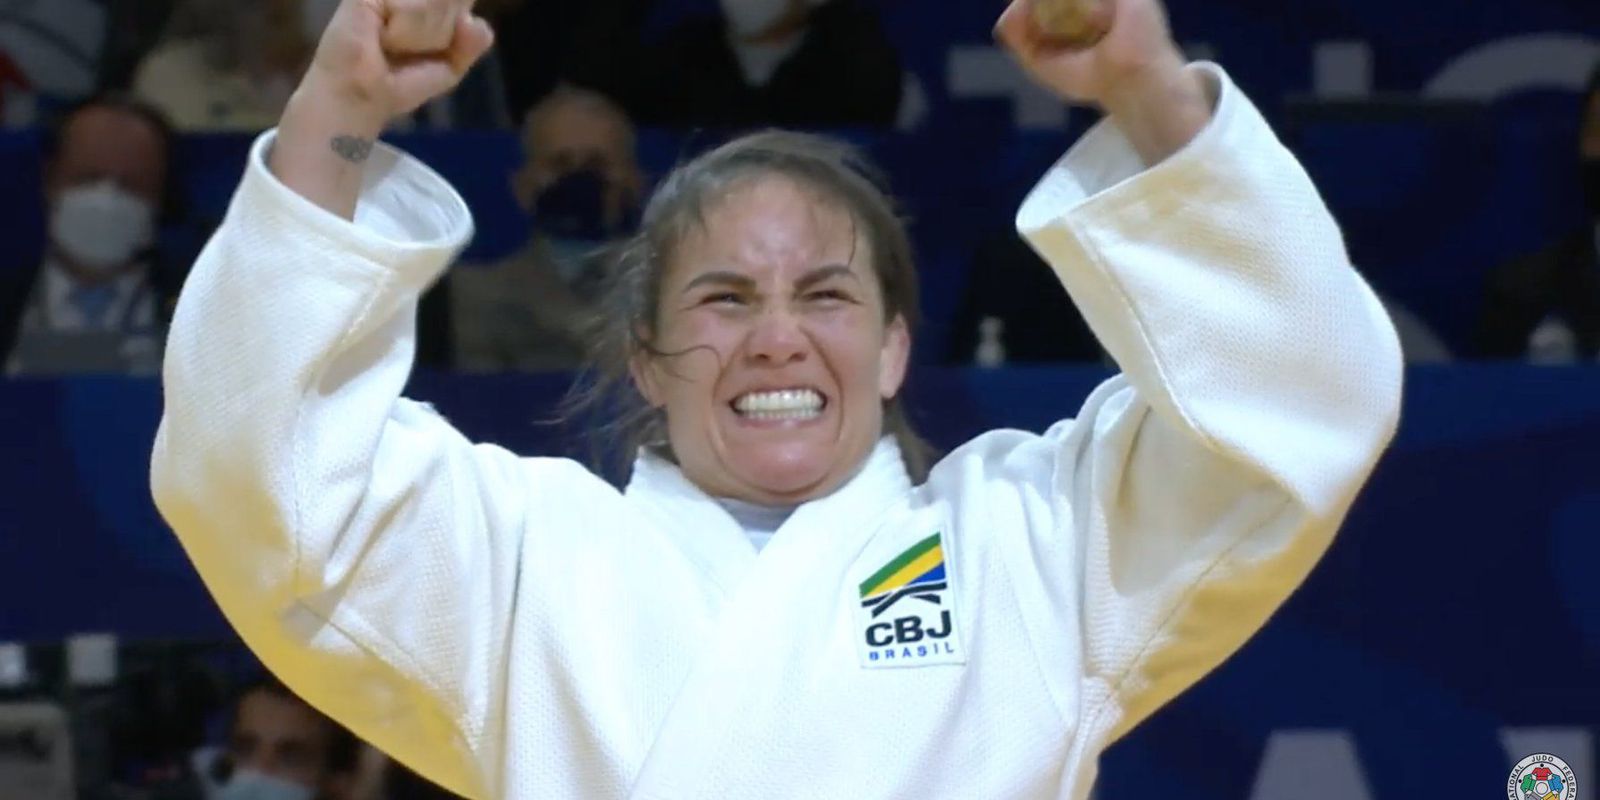 Maria Portela wins bronze at the Judo Grand Prix in Portugal